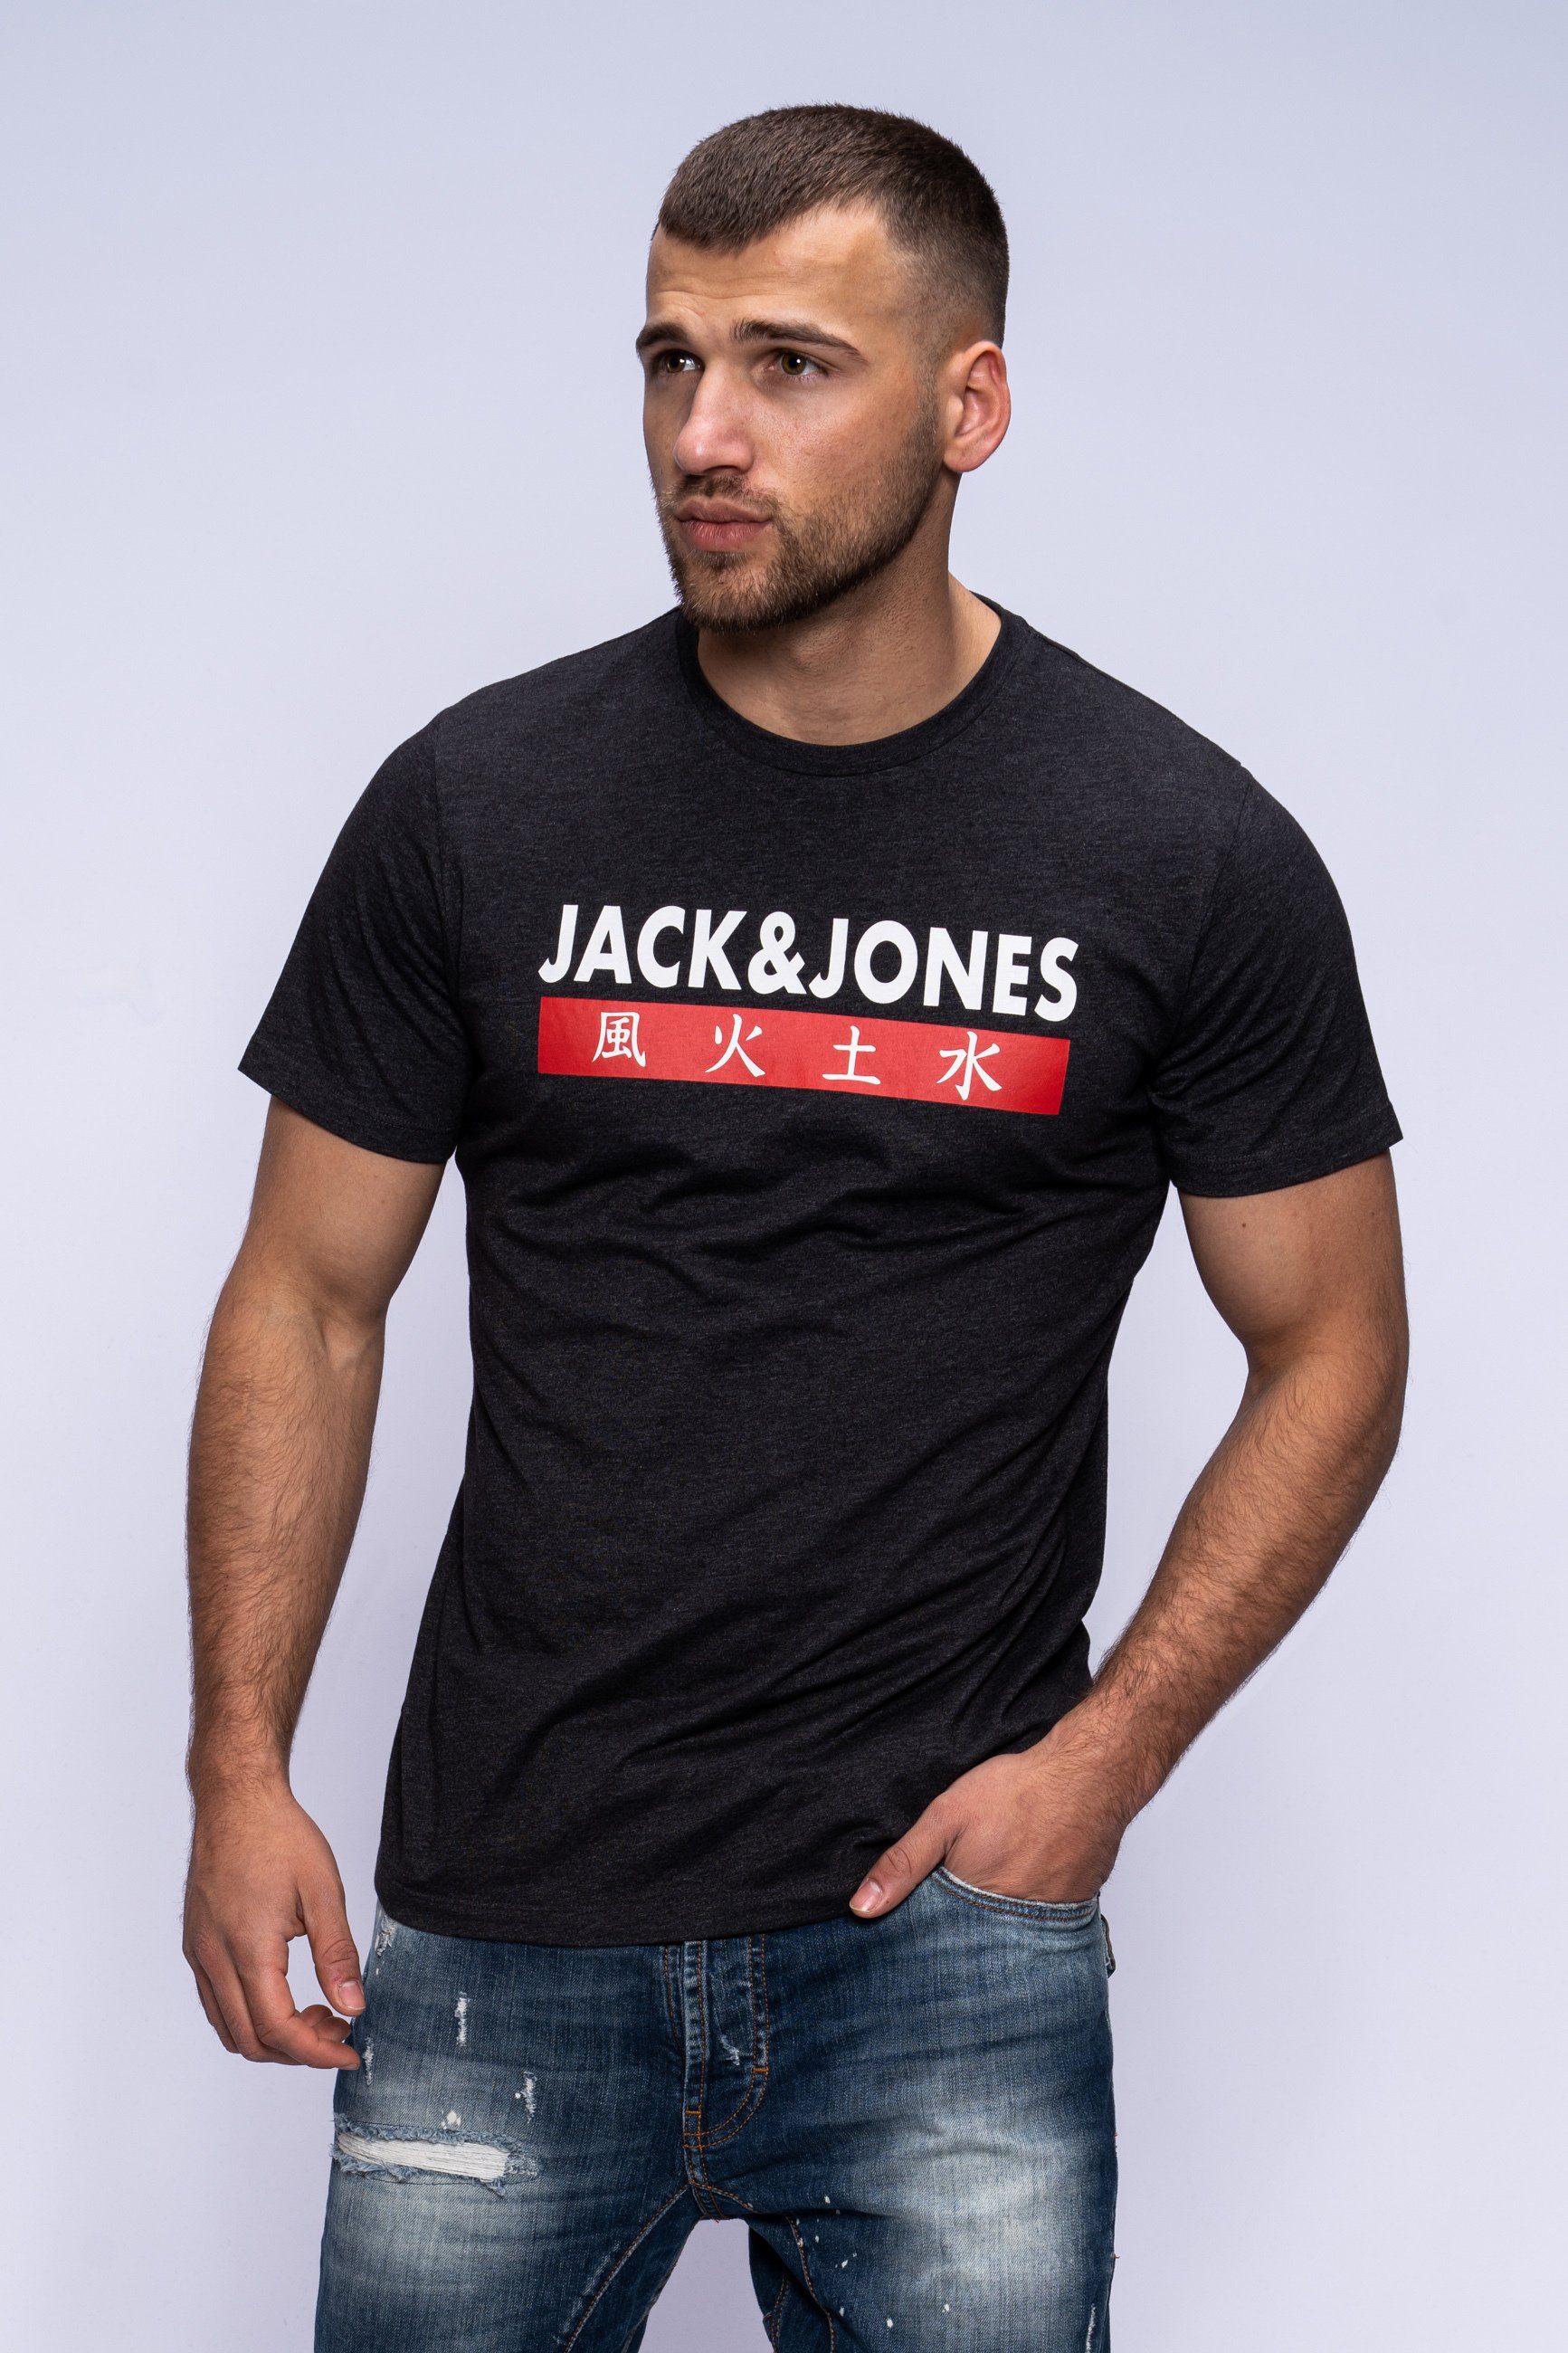 ELEMENTS CREW Print-Shirt Melange TEE SS Jack Grey Jones Dark NECK &